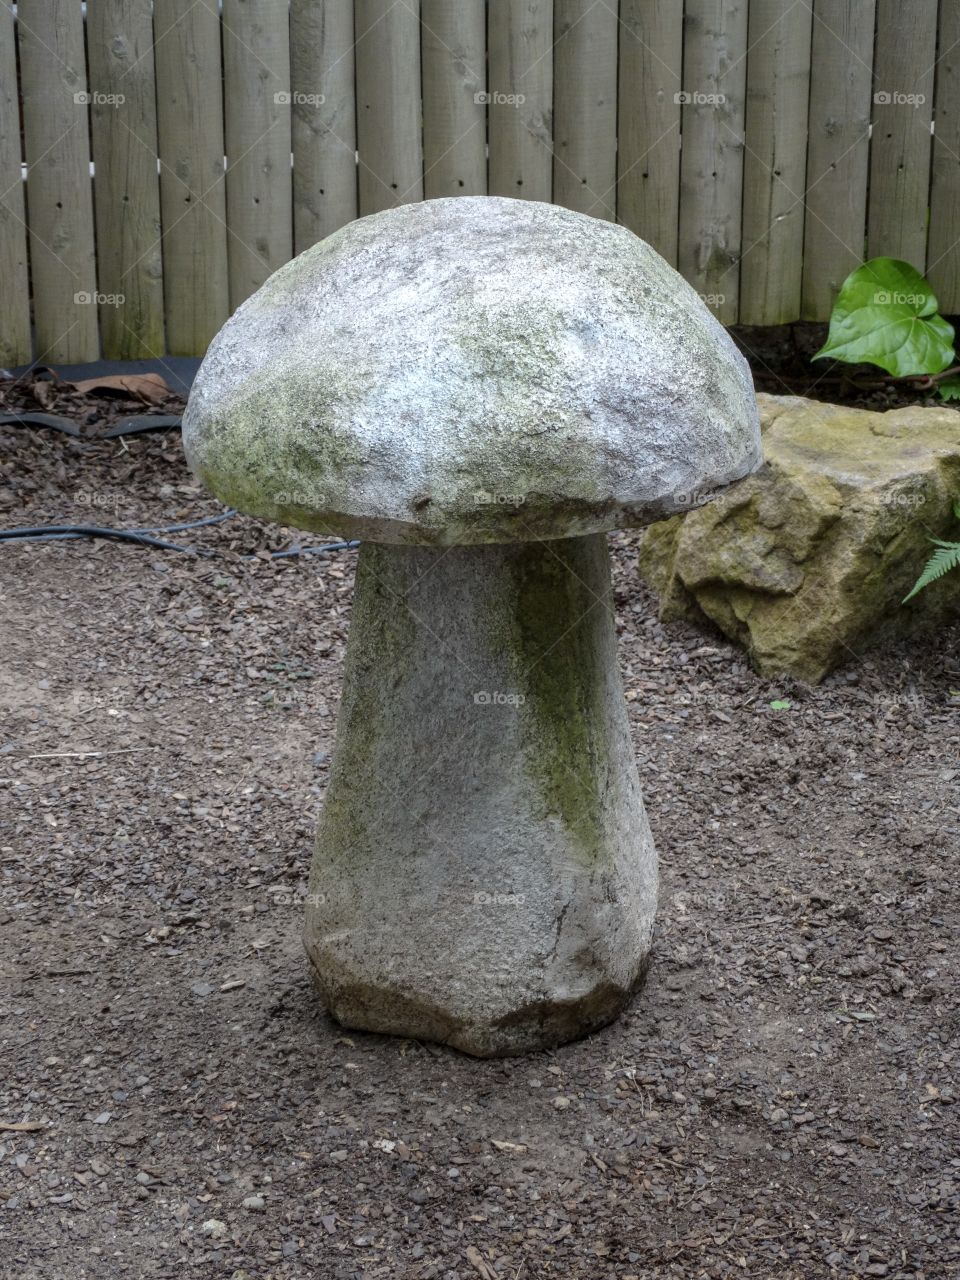 Stone mushroom